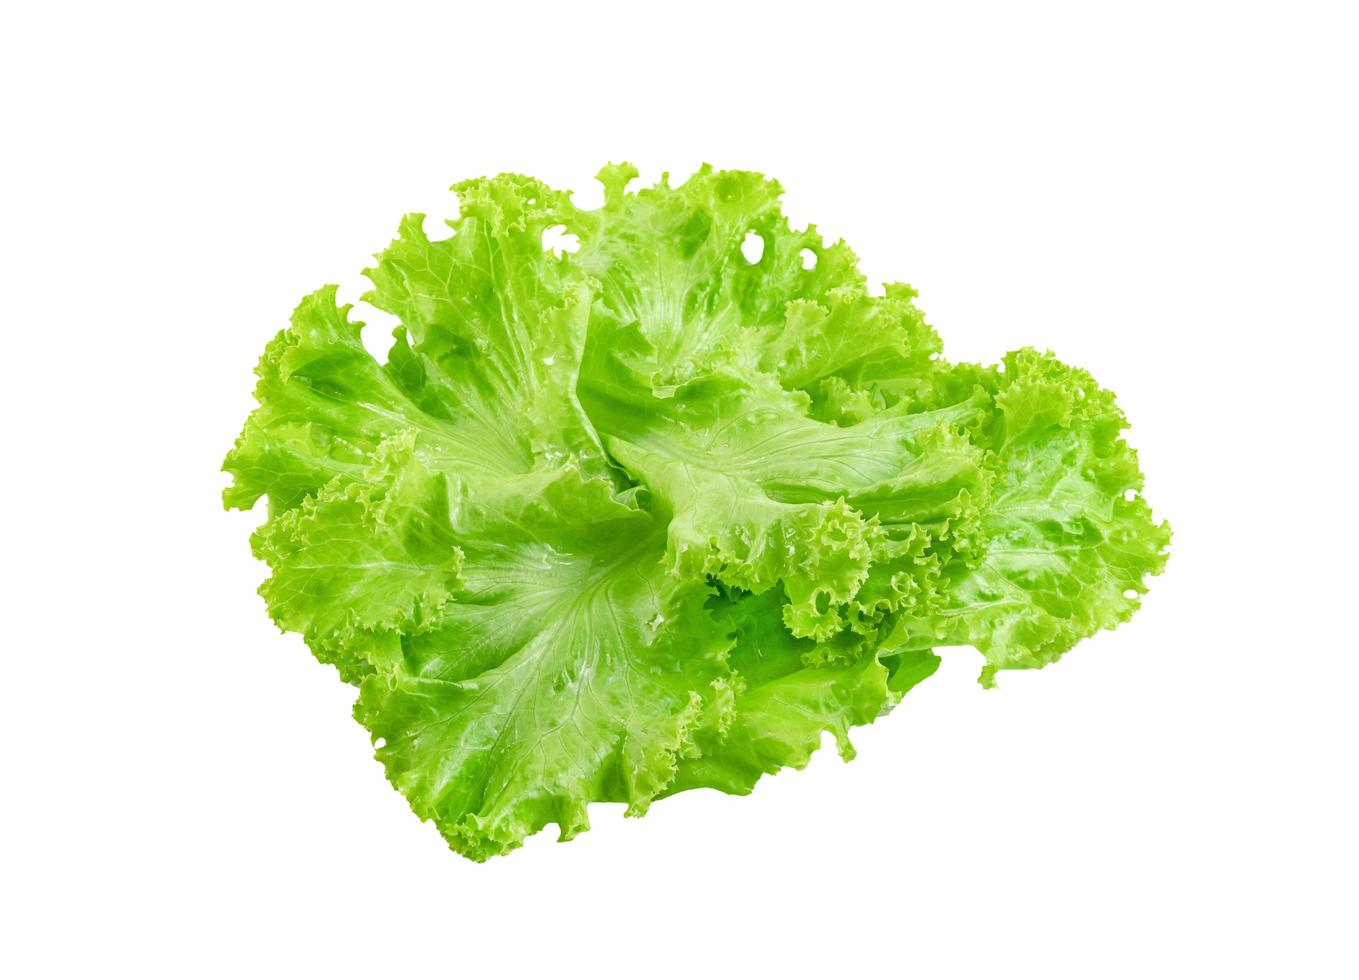 Salatblatt isoliert auf weißem Hintergrund, grüne Blätter Muster, Salatzutat foto